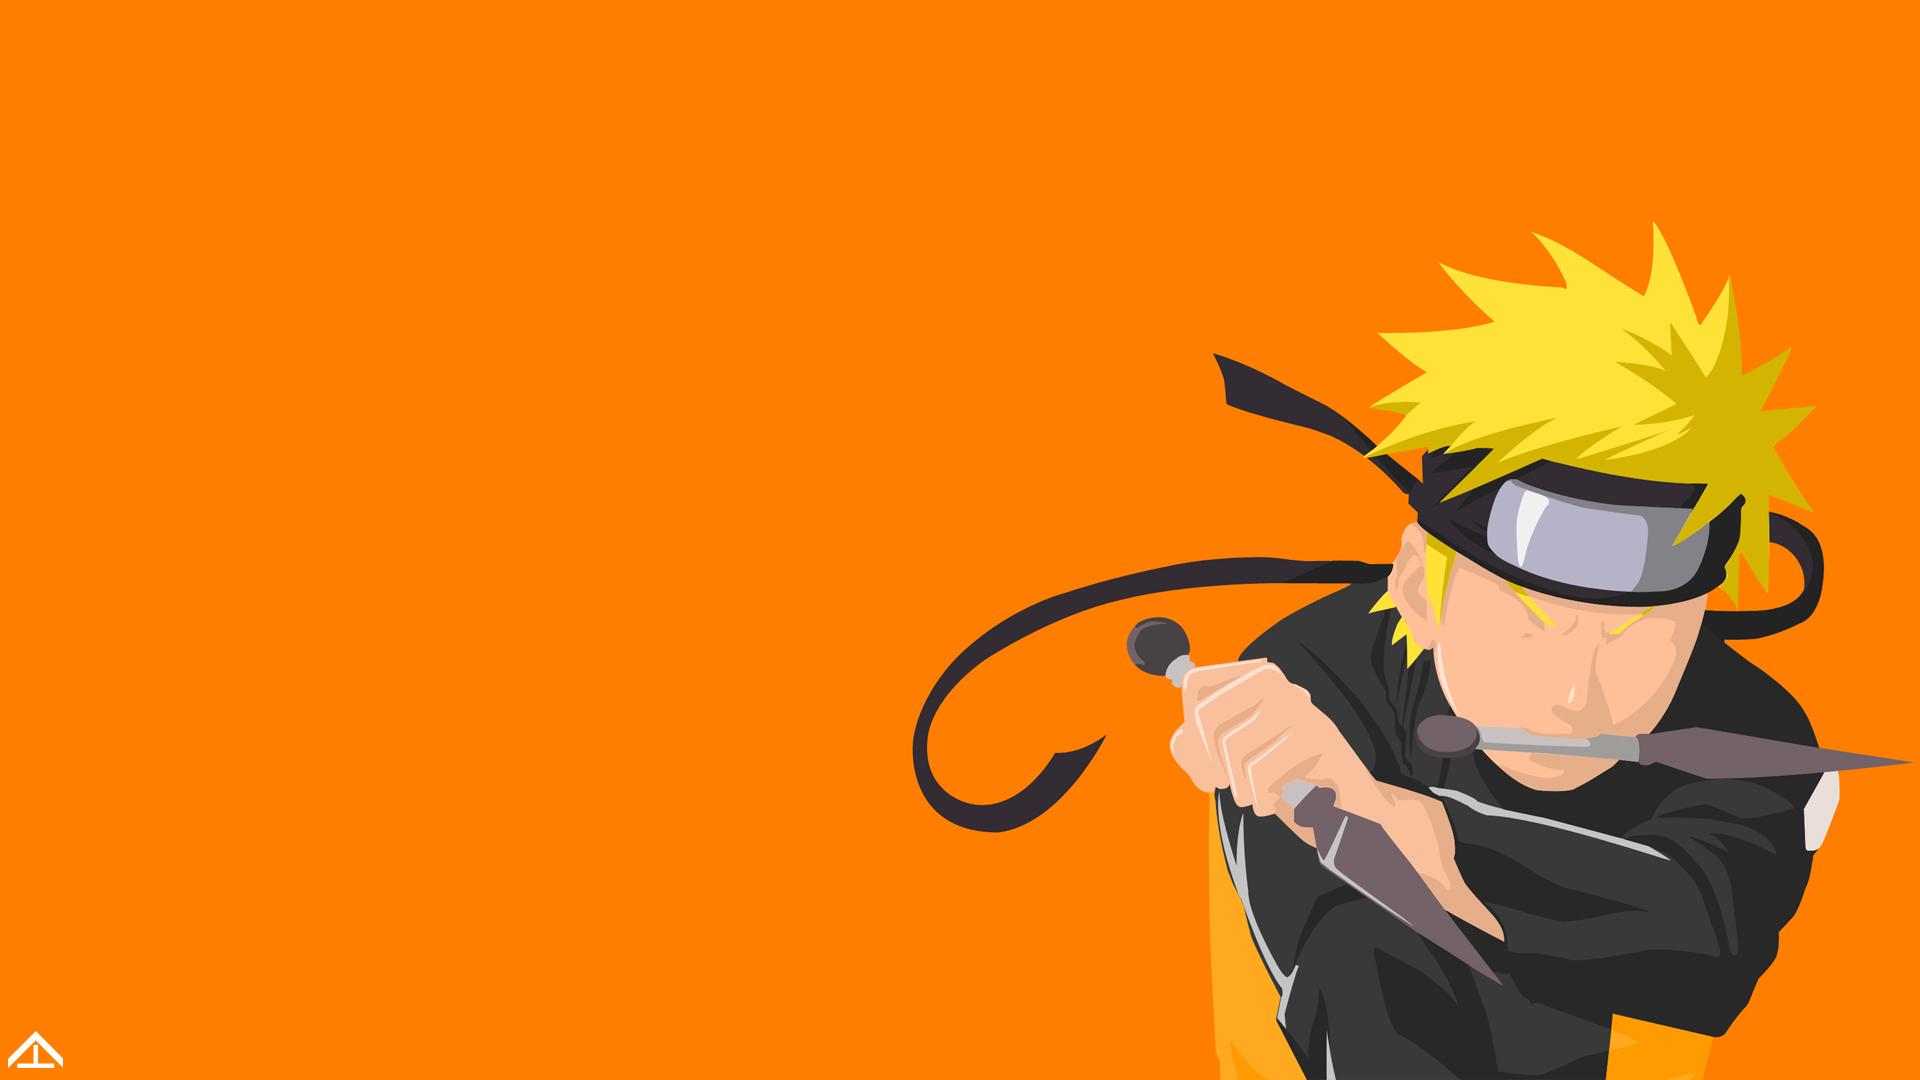 Naruto (anime), anime, Naruto hand sign, minimalism, anime boys